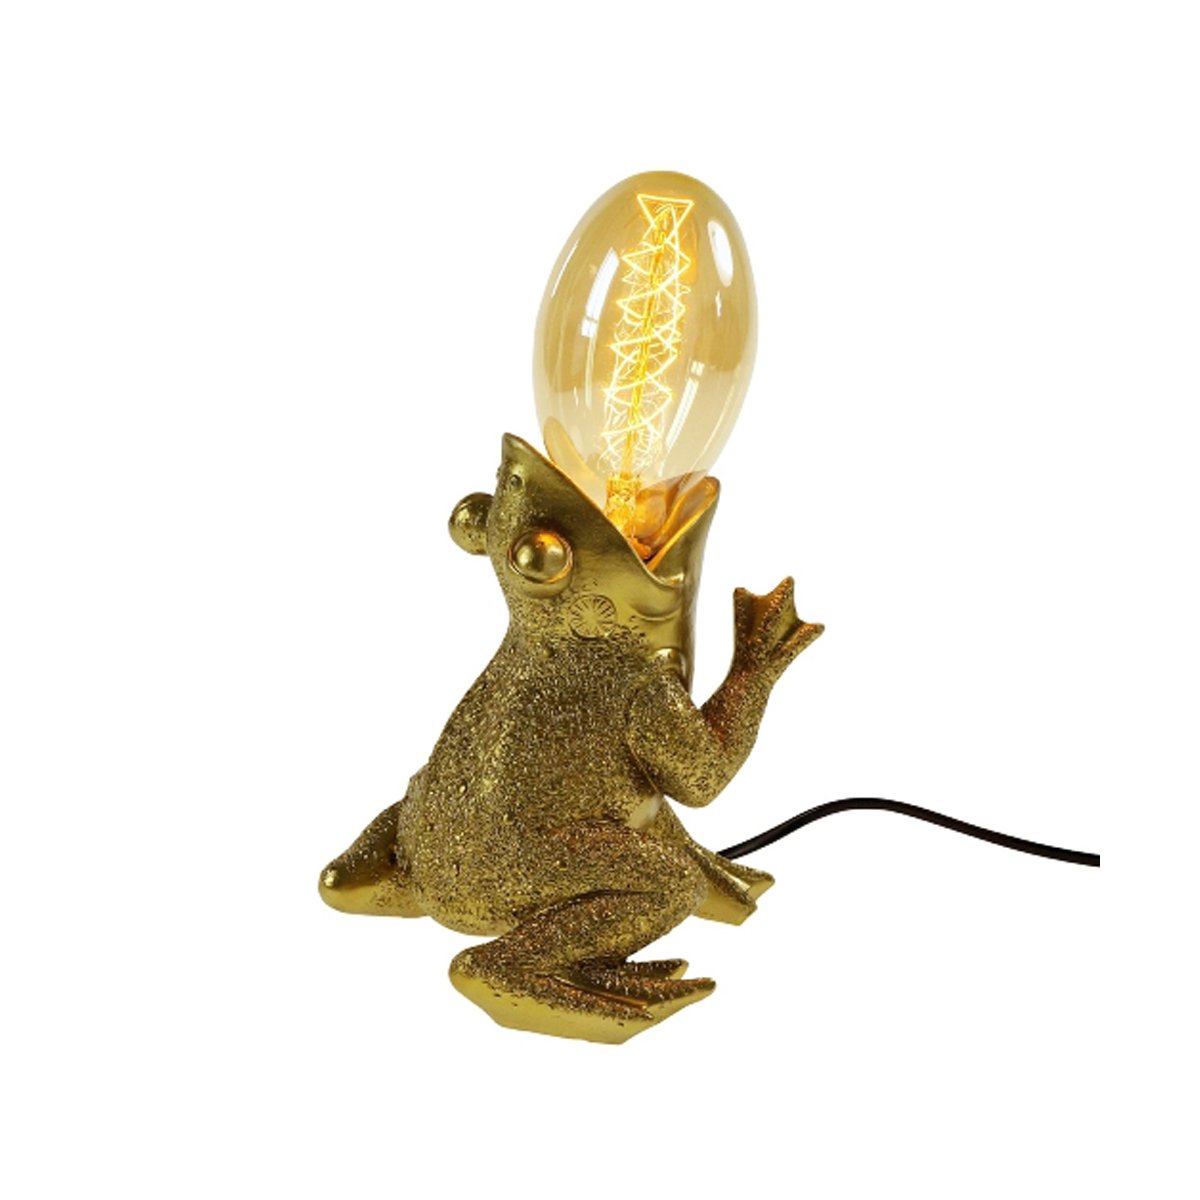 Tischleuchte Lampe Frosch Froggy gold - Tischlampe, Dekoleuchte, Deko,  58,95 €